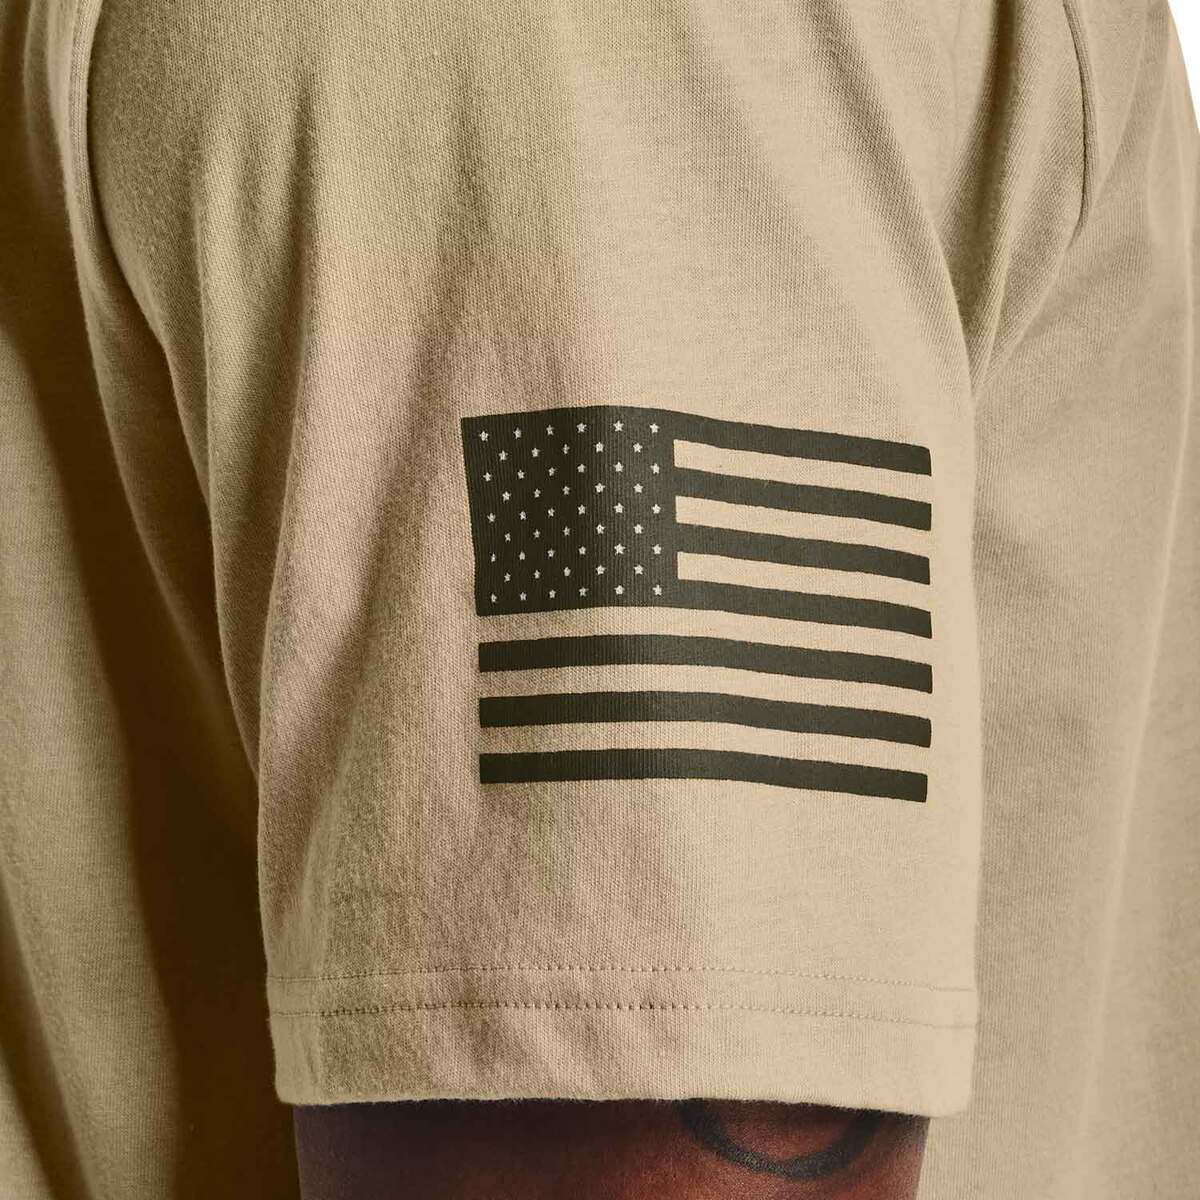 Under Armour Men's Freedom Logo Short Sleeve Shirt - Desert Sand/Marine ...